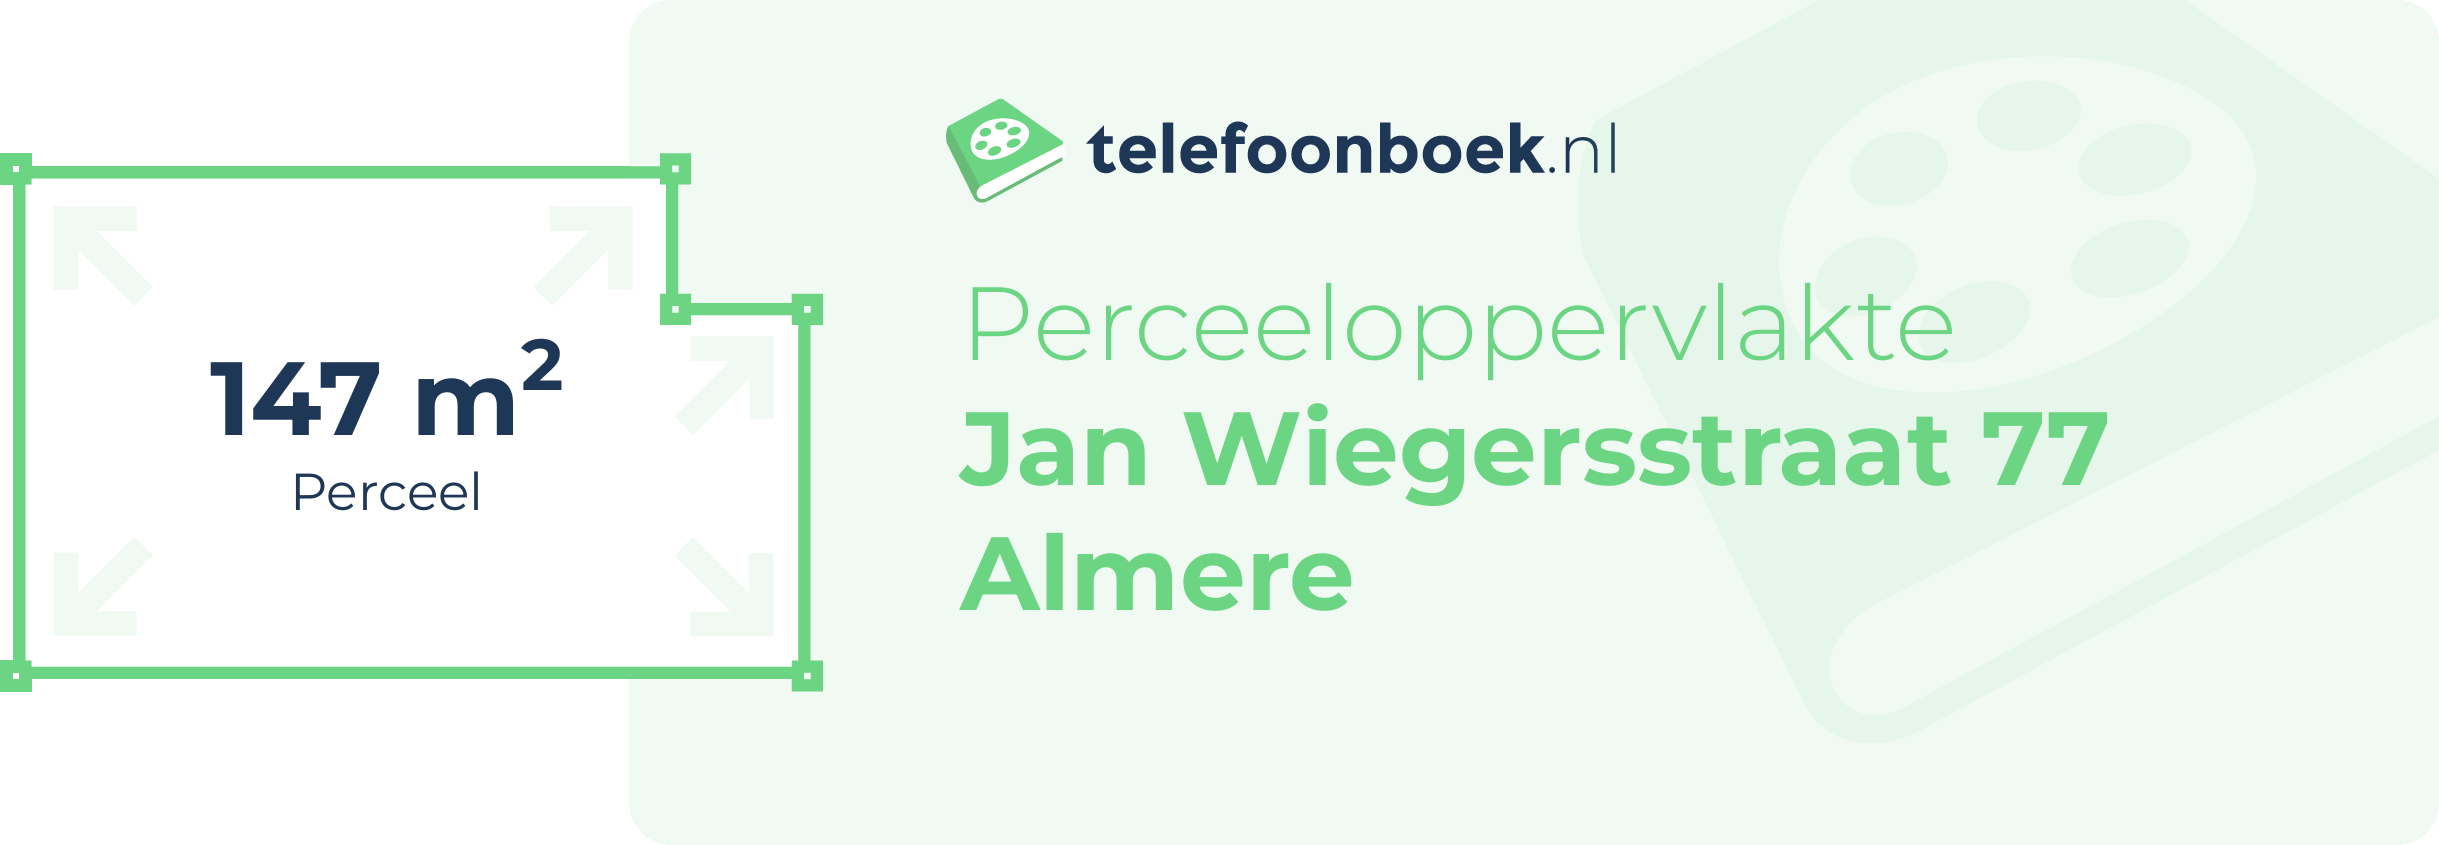 Perceeloppervlakte Jan Wiegersstraat 77 Almere